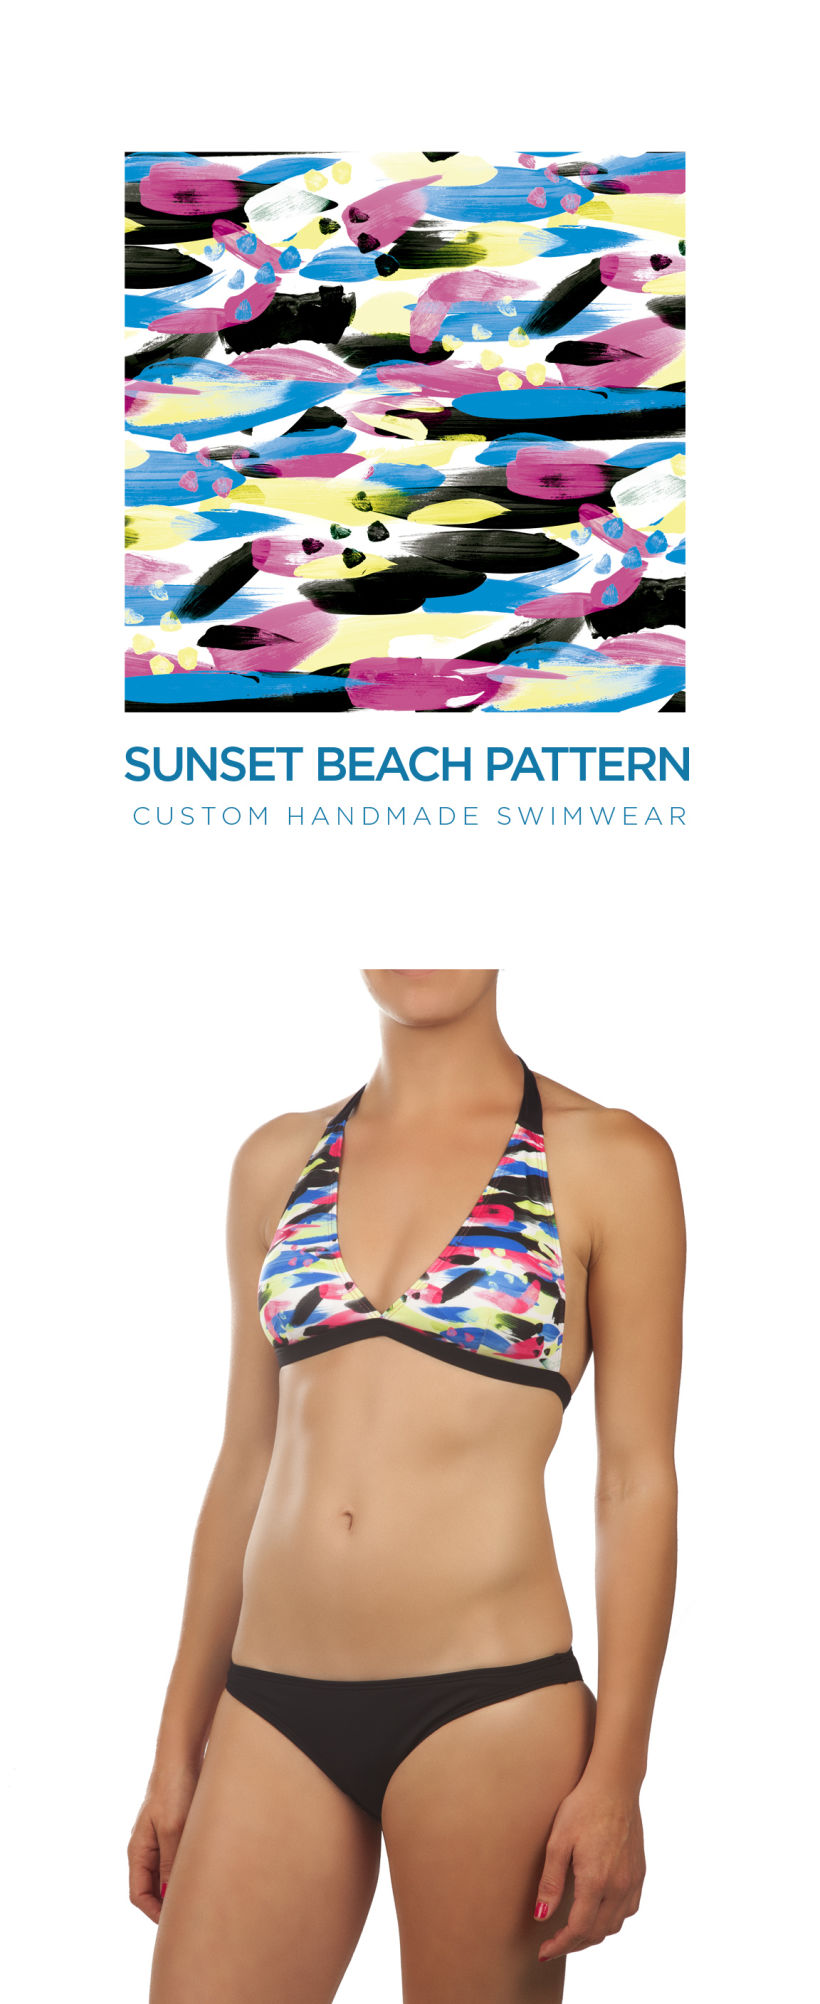 swimwear pattern by FIUFIUU Barcelon 7